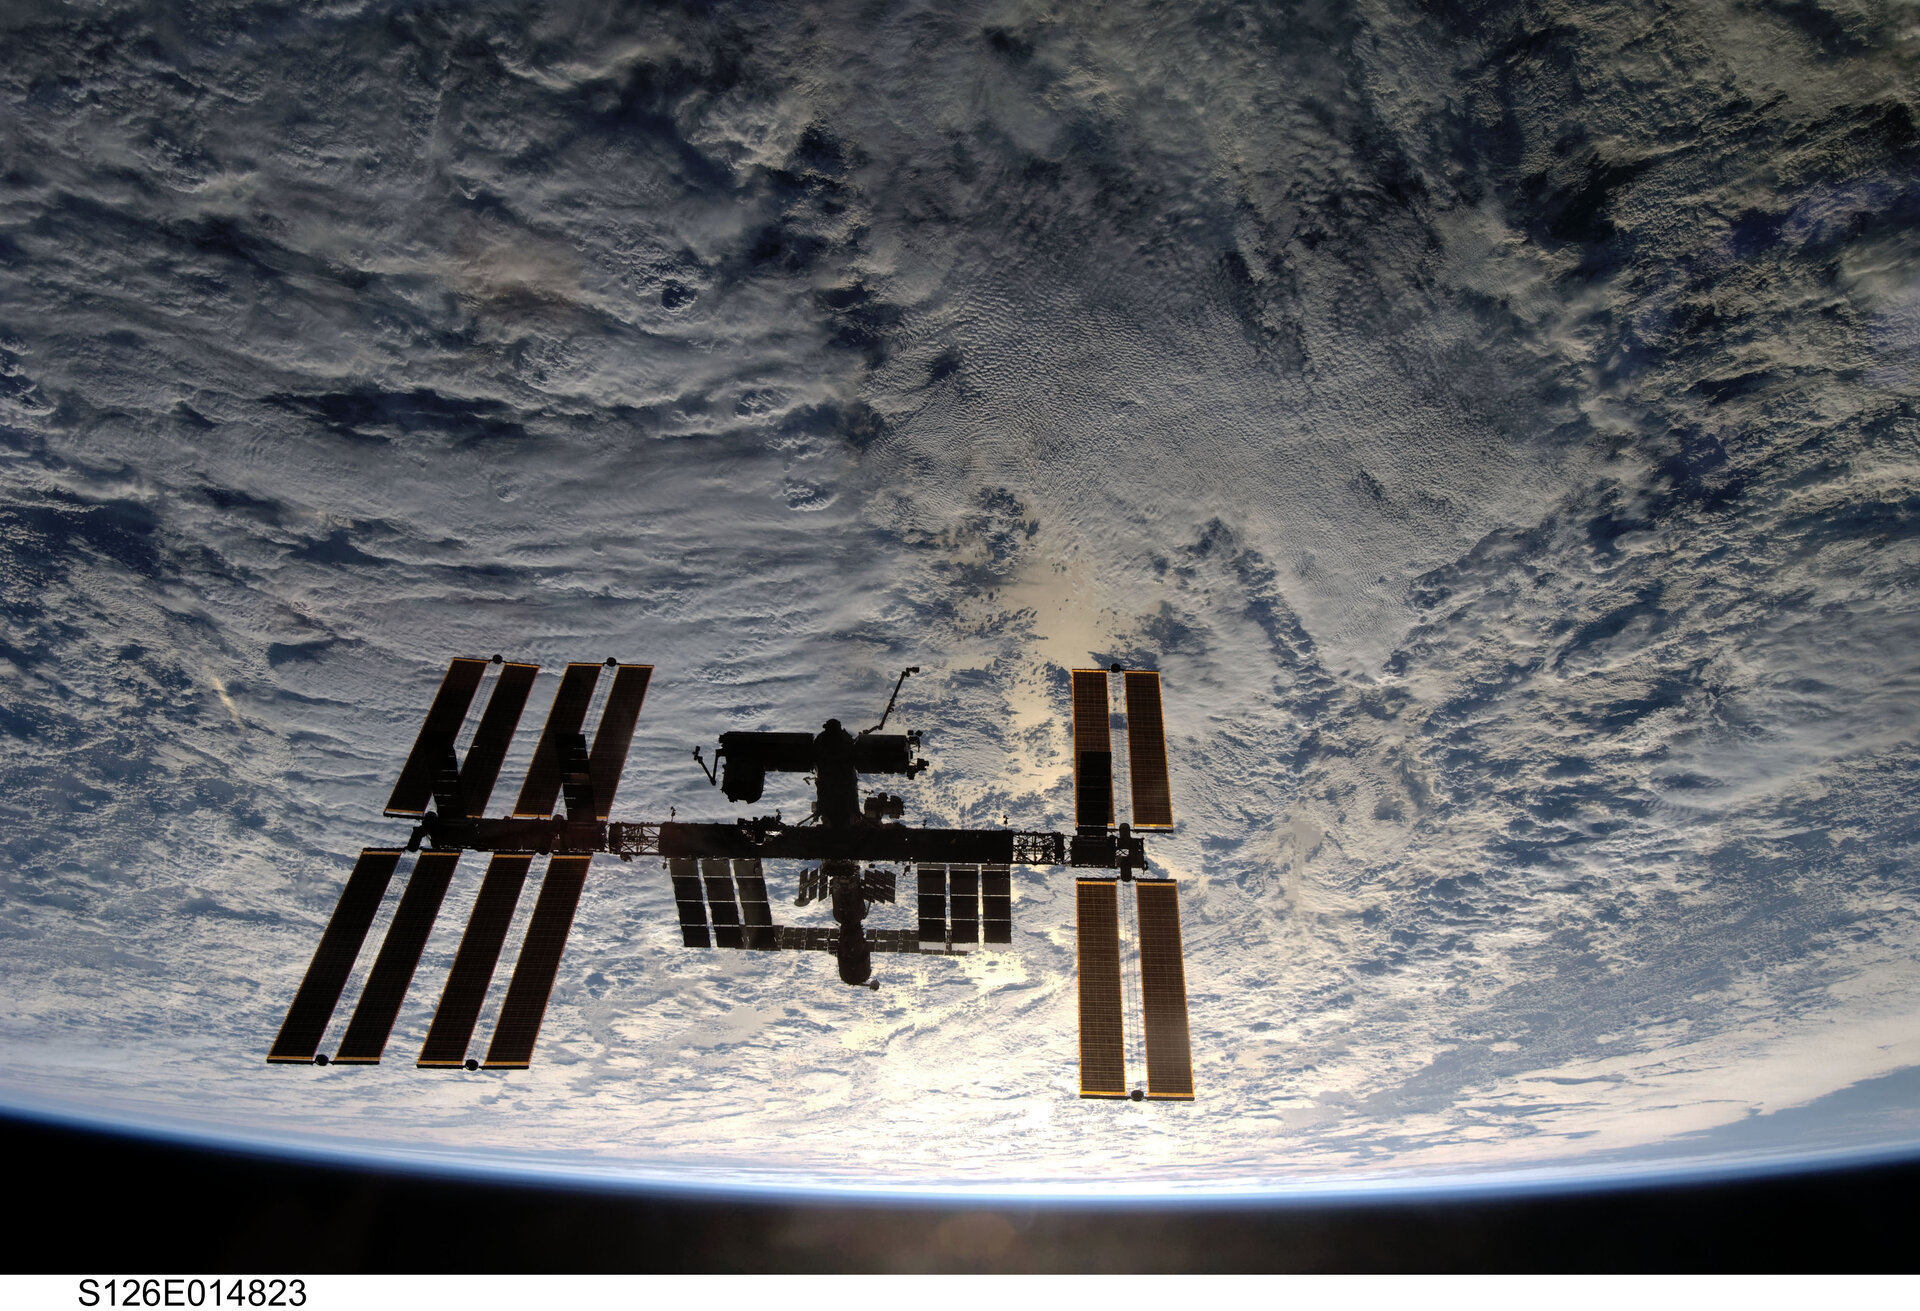 La Station Spatiale Internationale photographiée depuis la navette spatiale Endeavour le 28 novembre 2008